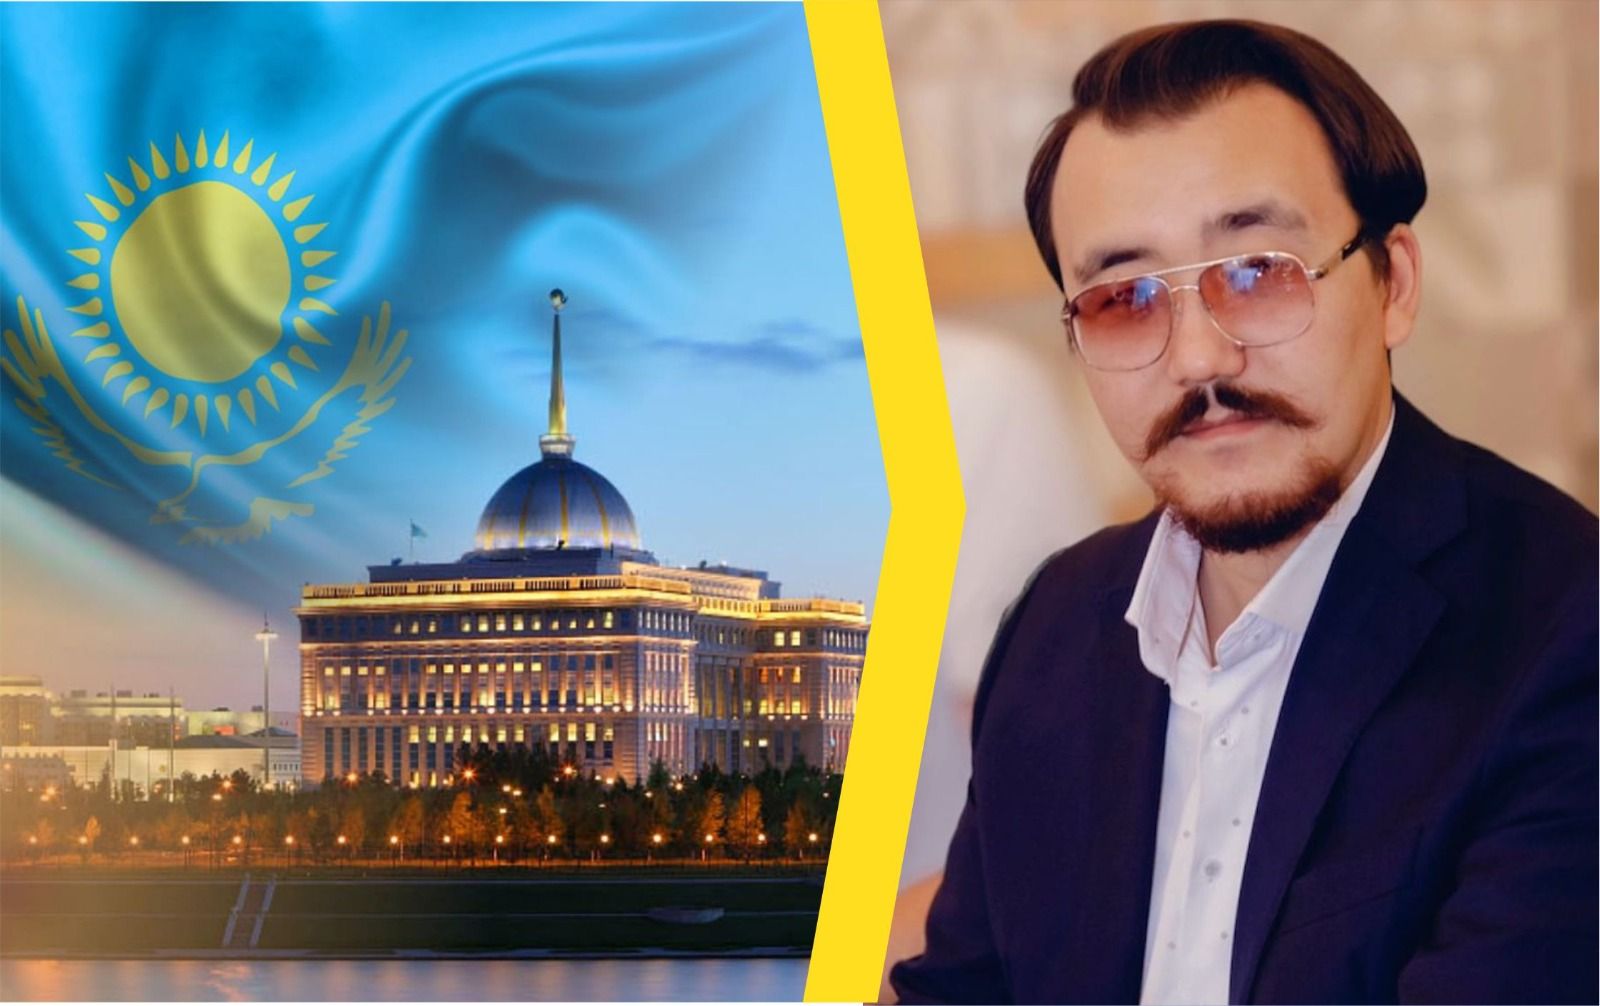 Развитие науки и высоких технологий гармонично сочетаются с концепцией «Справедливого Казахстана» - Рустем Мустафин 